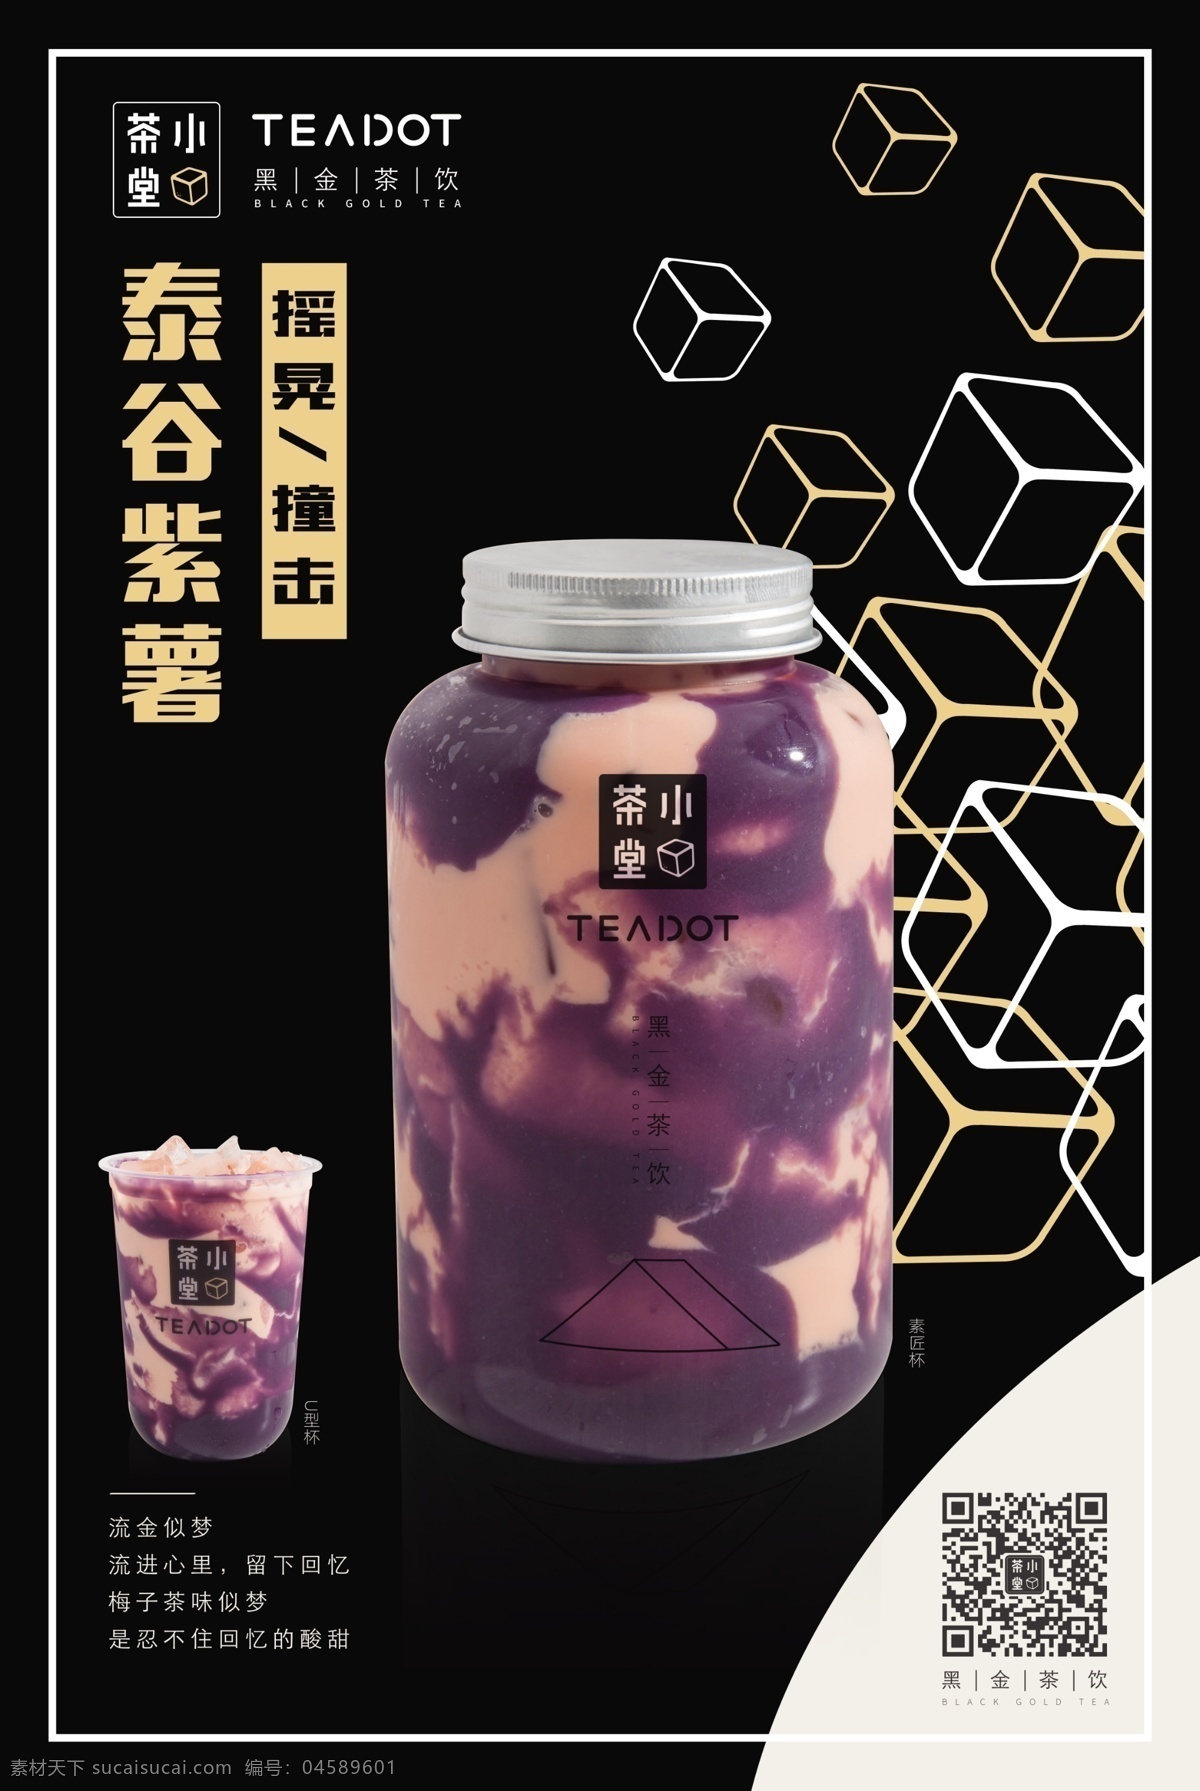 小茶堂 logo 泰谷紫薯 饮品 奶茶 招贴 海报 竖版 黑金茶饮 正方体 立方体 瓶罐装 招贴设计